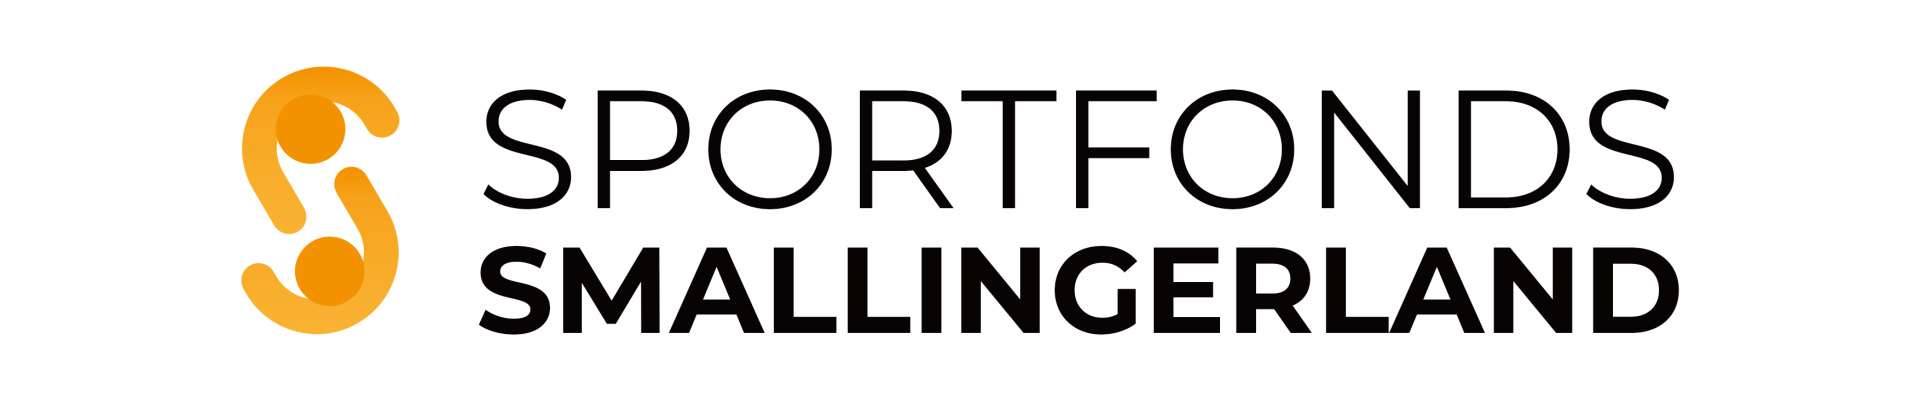 Sportfonds logo website.jpg